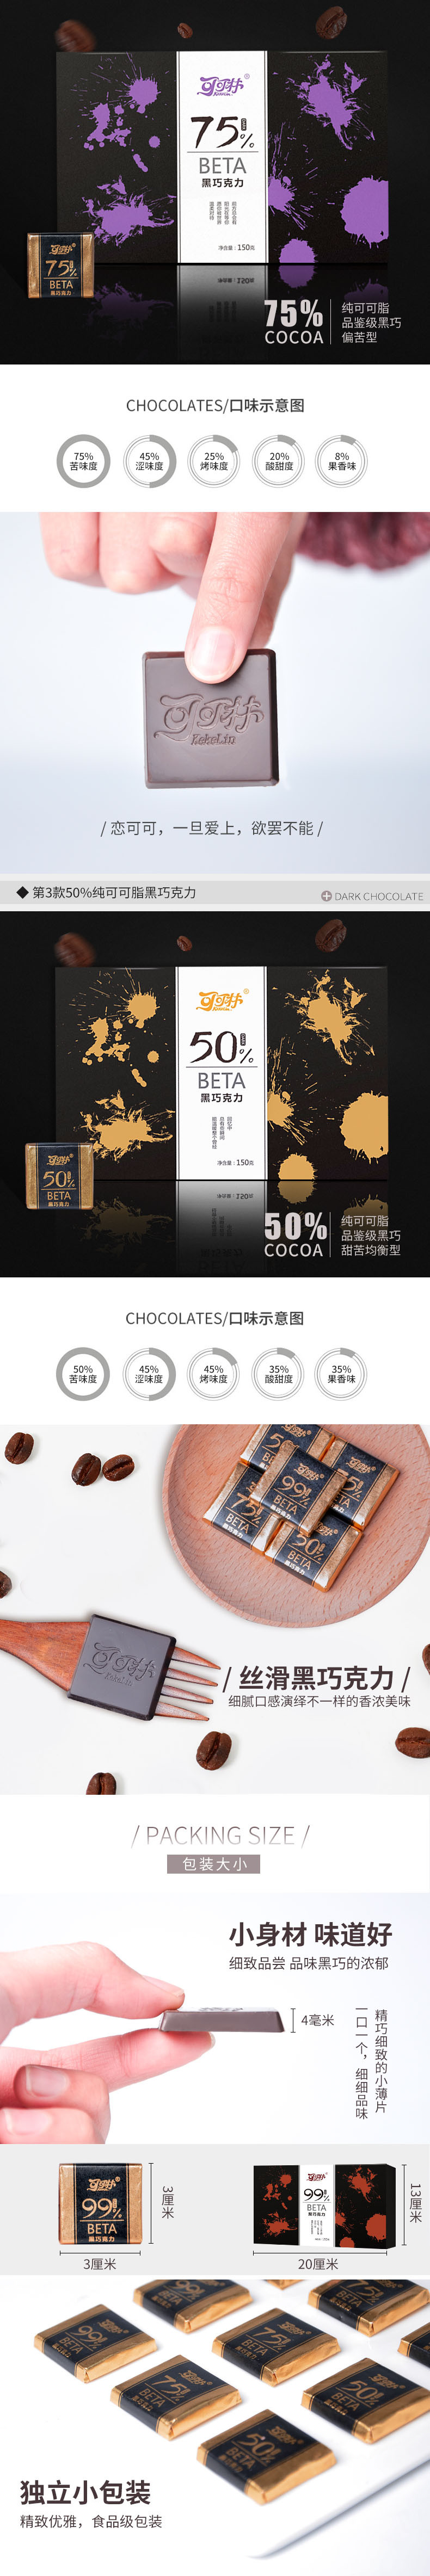 可可林 黑巧克力120g 三种纯度可选 巧克力零食休闲食品